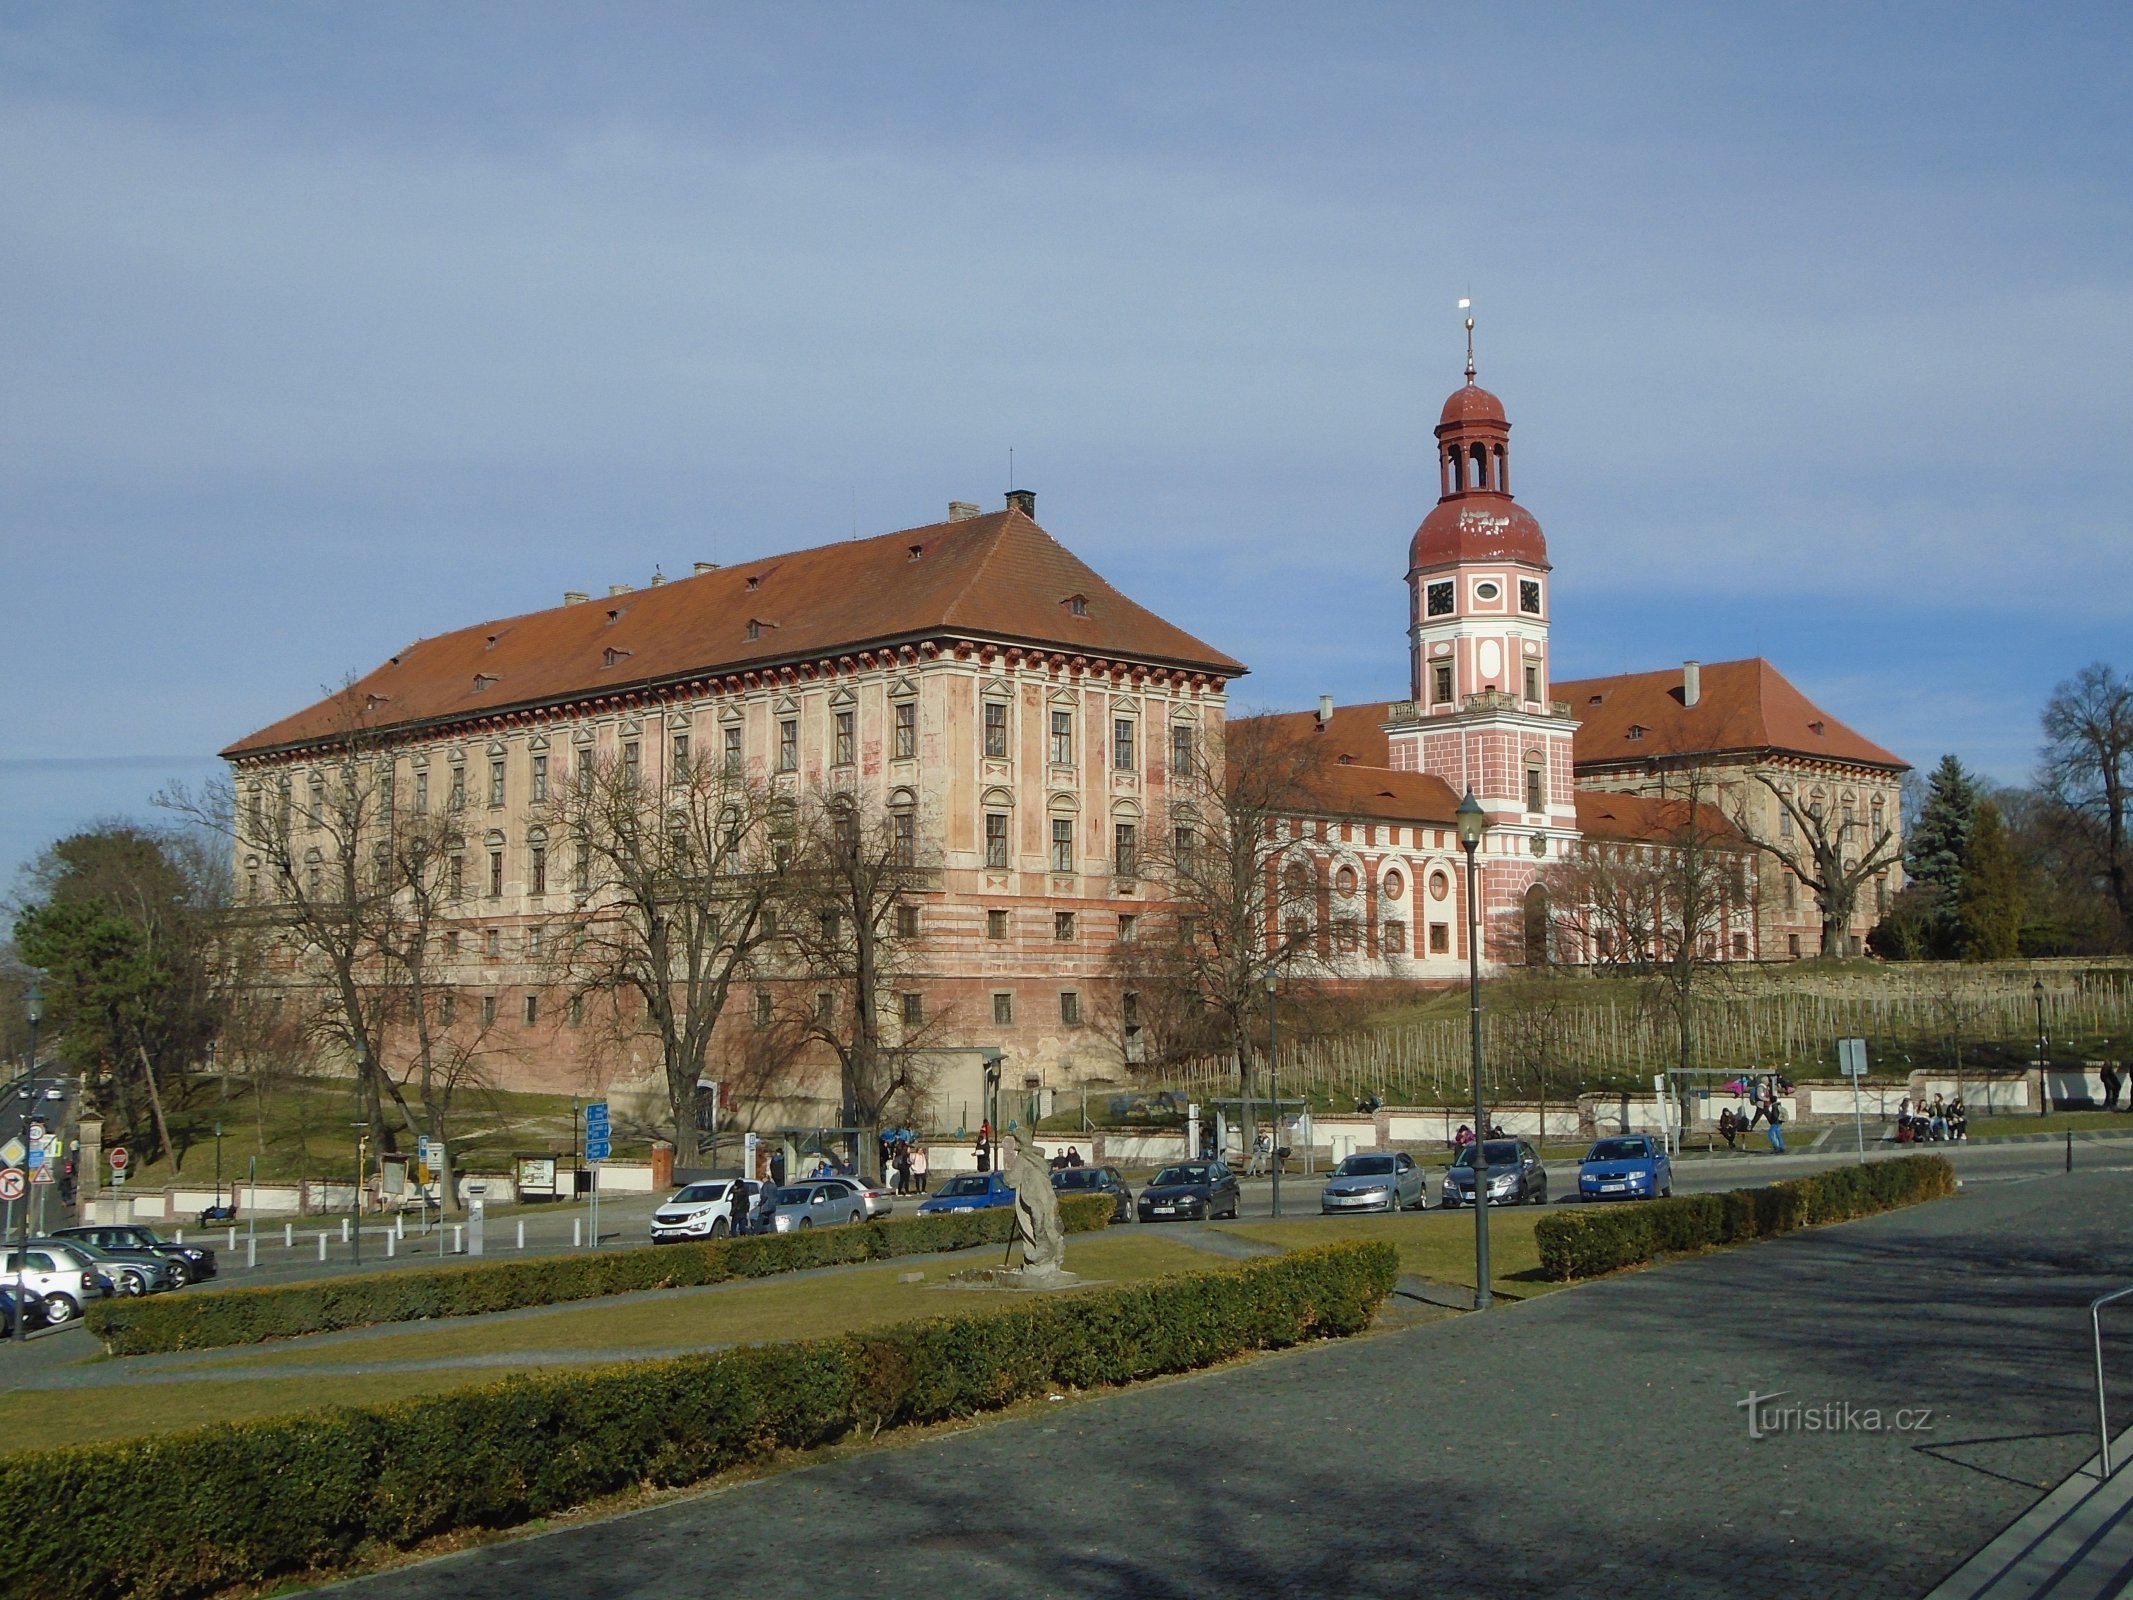 Lobkowicz Castle (Roudnice nad Labem, 6.3.2019 March XNUMX)